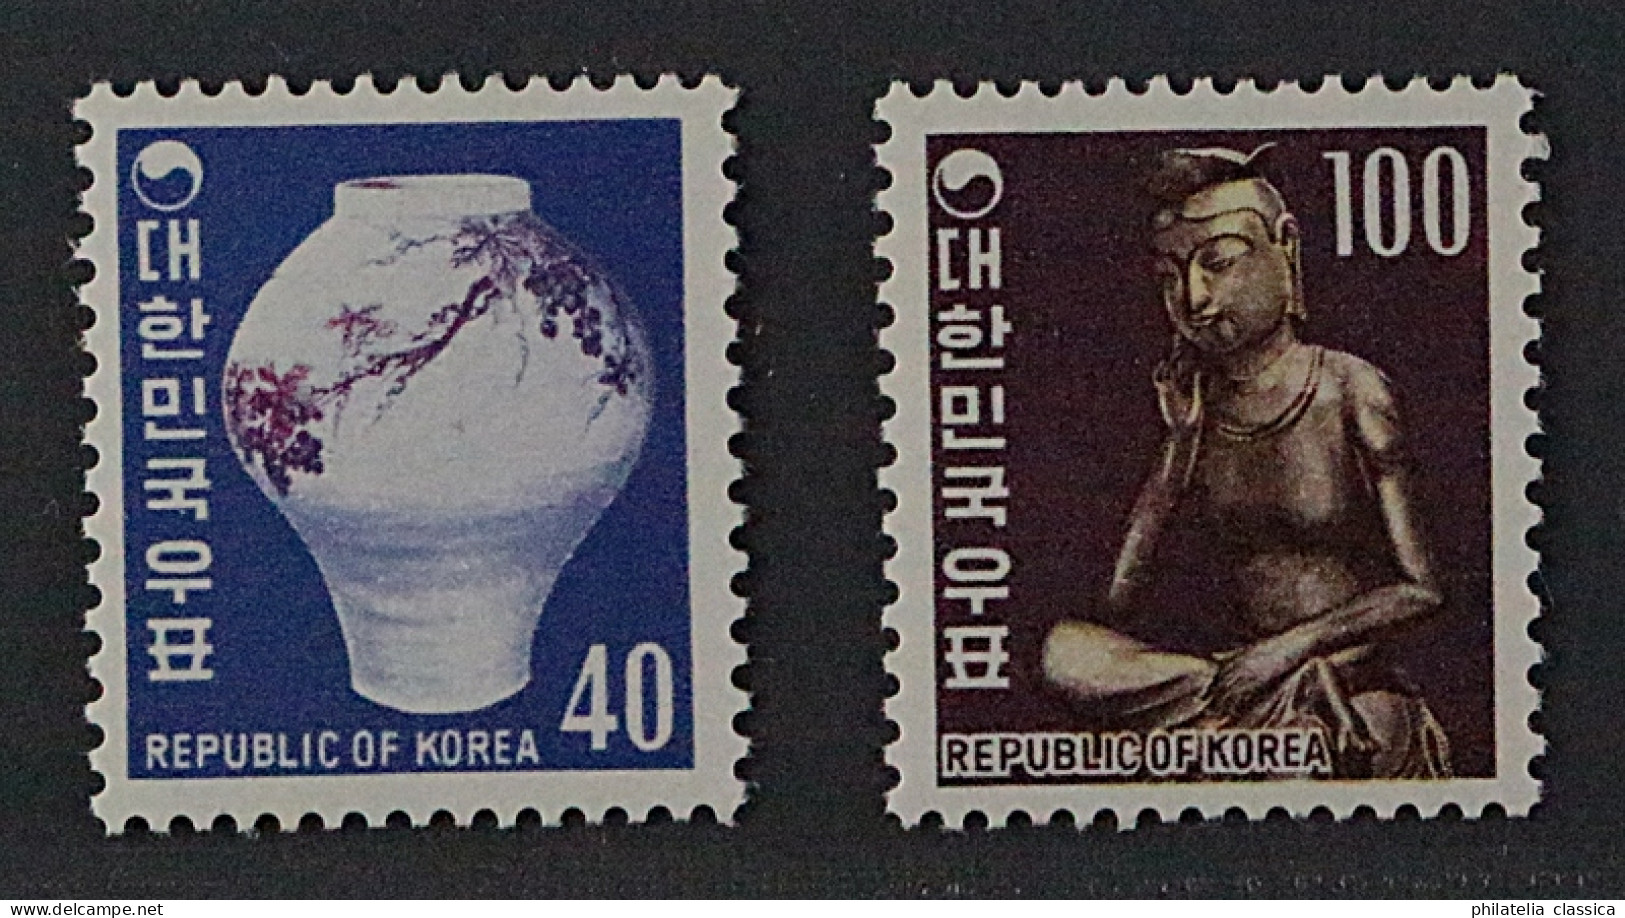 SÜD-KOREA 657-58 **  1969, Höchstwerte 40 + 100 W., Postfrisch, KW 127,- € - Corea Del Sur